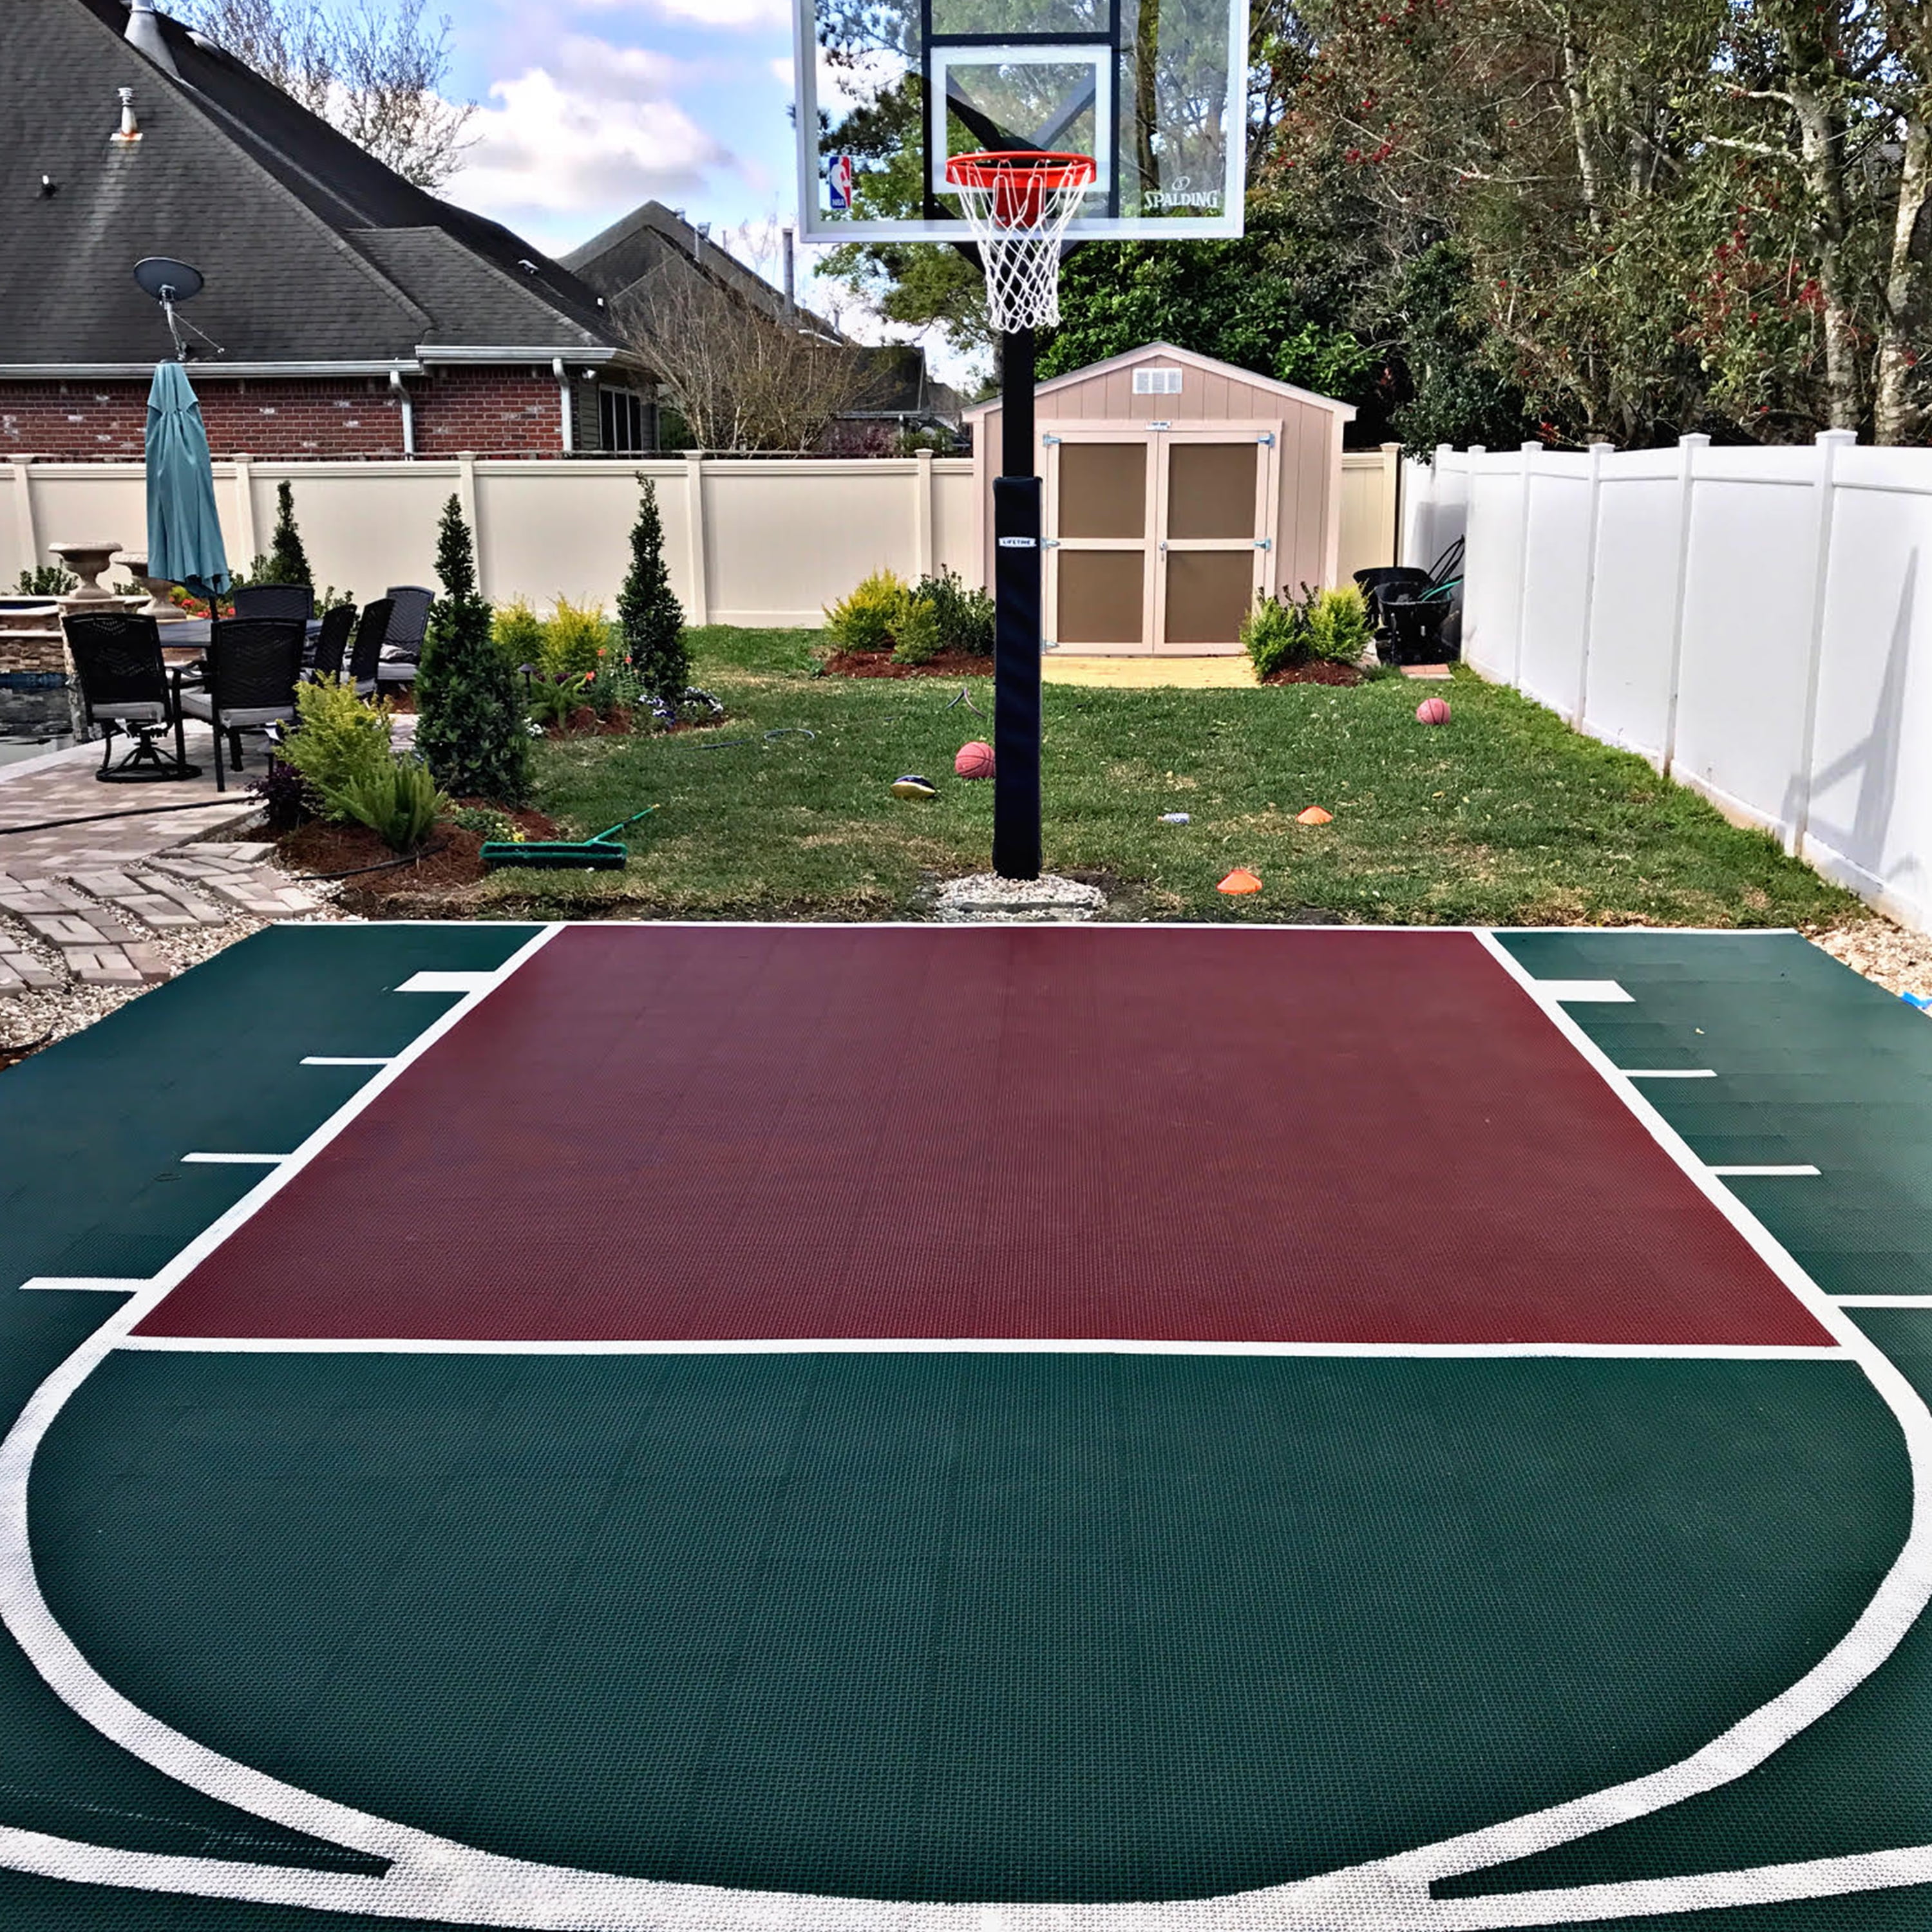 Flooringinc Outdoor Basketball Court, Basketball Court Tiles